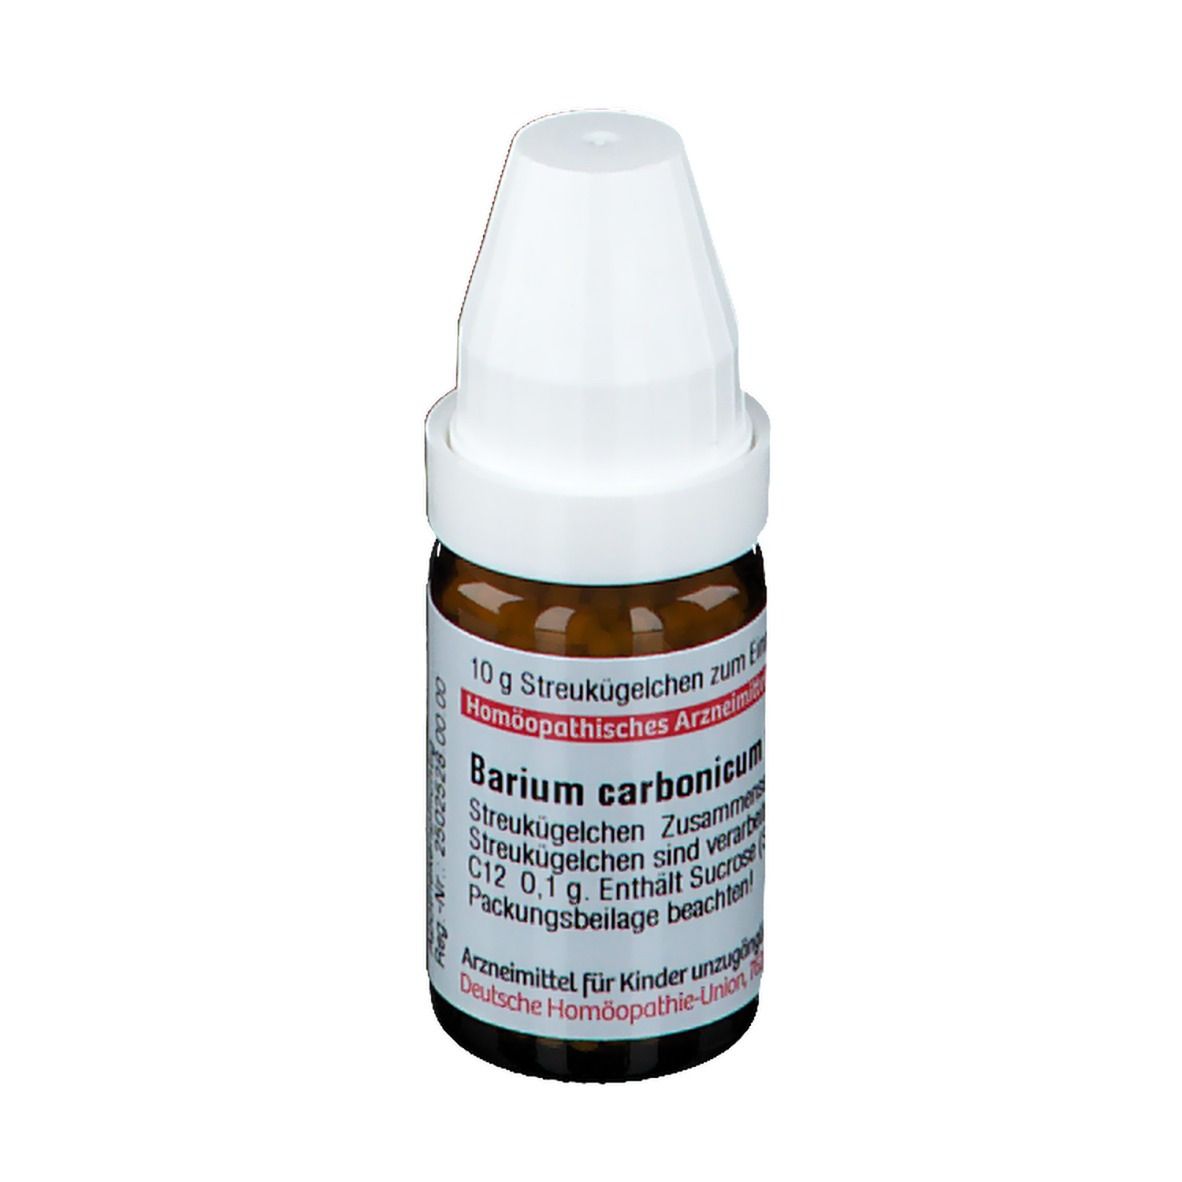 DHU Barium Carbonicum C12